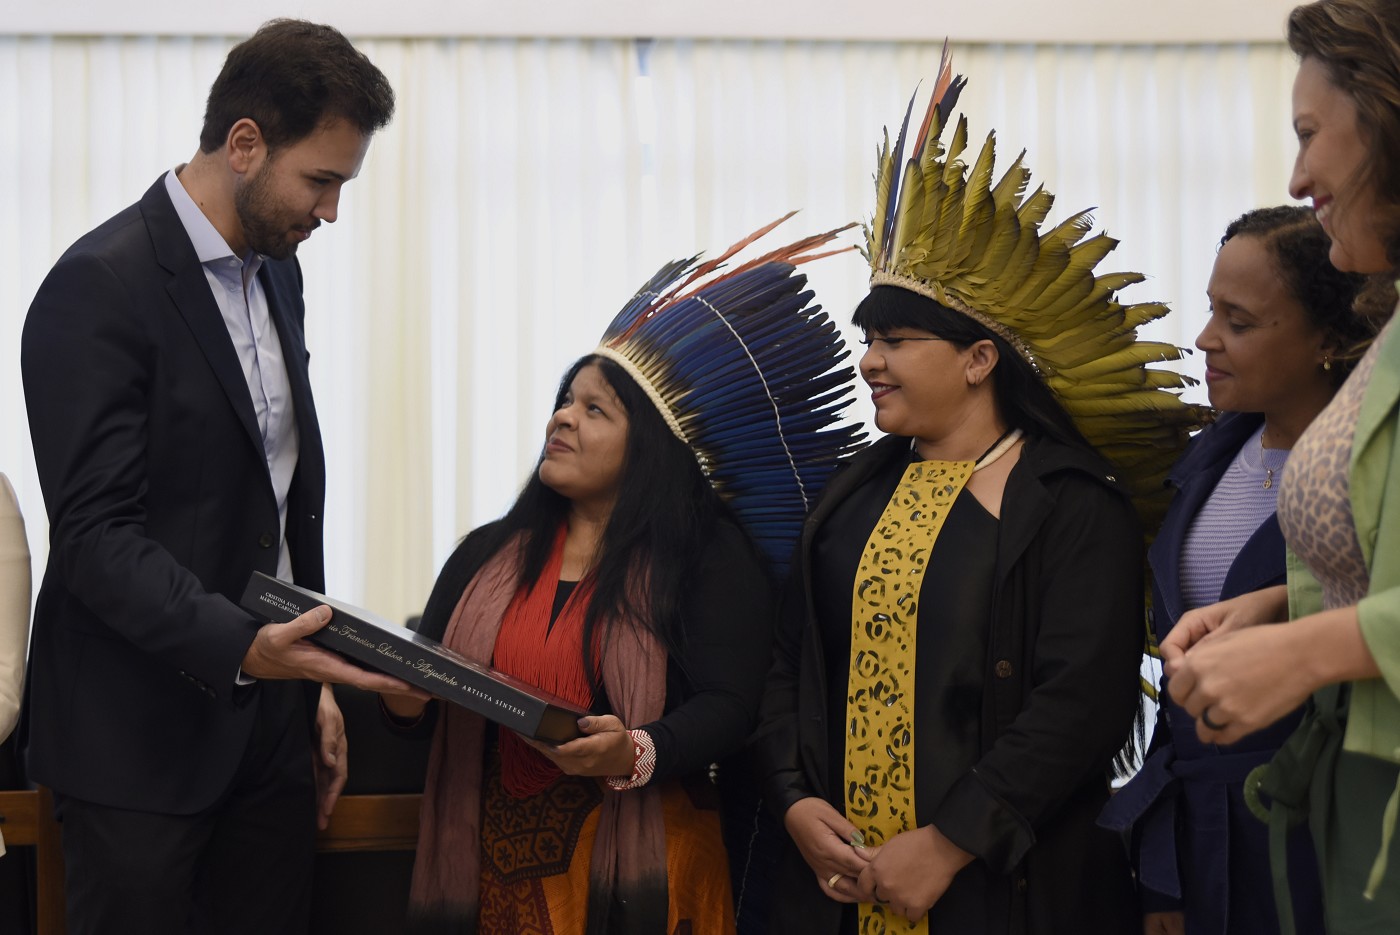 Visita da ministra dos Povos Indígenas do Brasil à ALMG